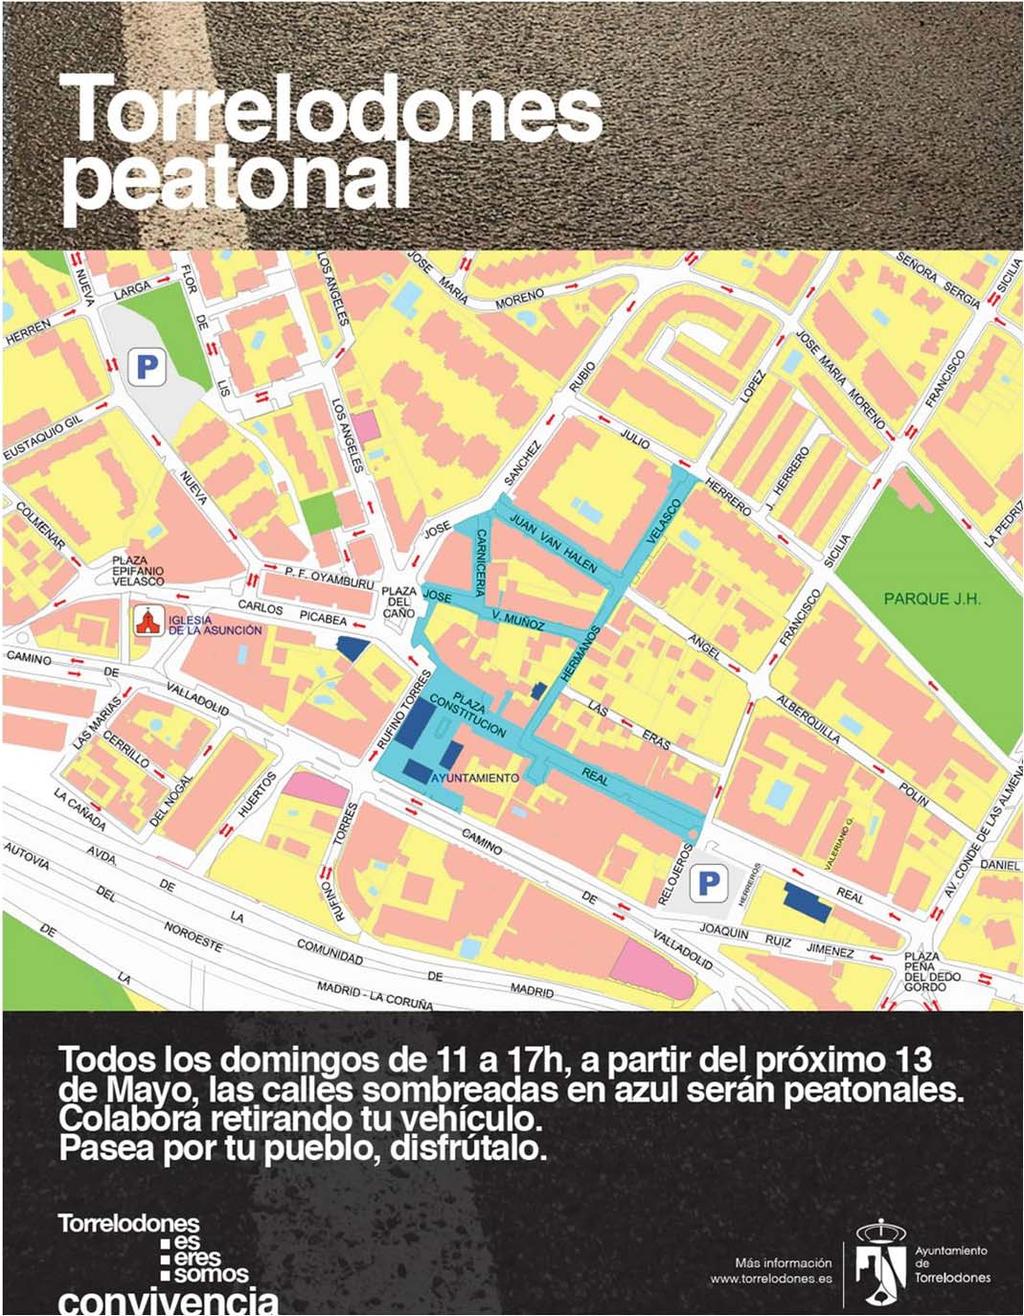 Uno de los objetivos a lograr, priorizados en el Plan de Movilidad, es incrementar los espacios públicos peatonales en los dos centros urbanos de Torrelodones Se inició el camino peatonalizando en